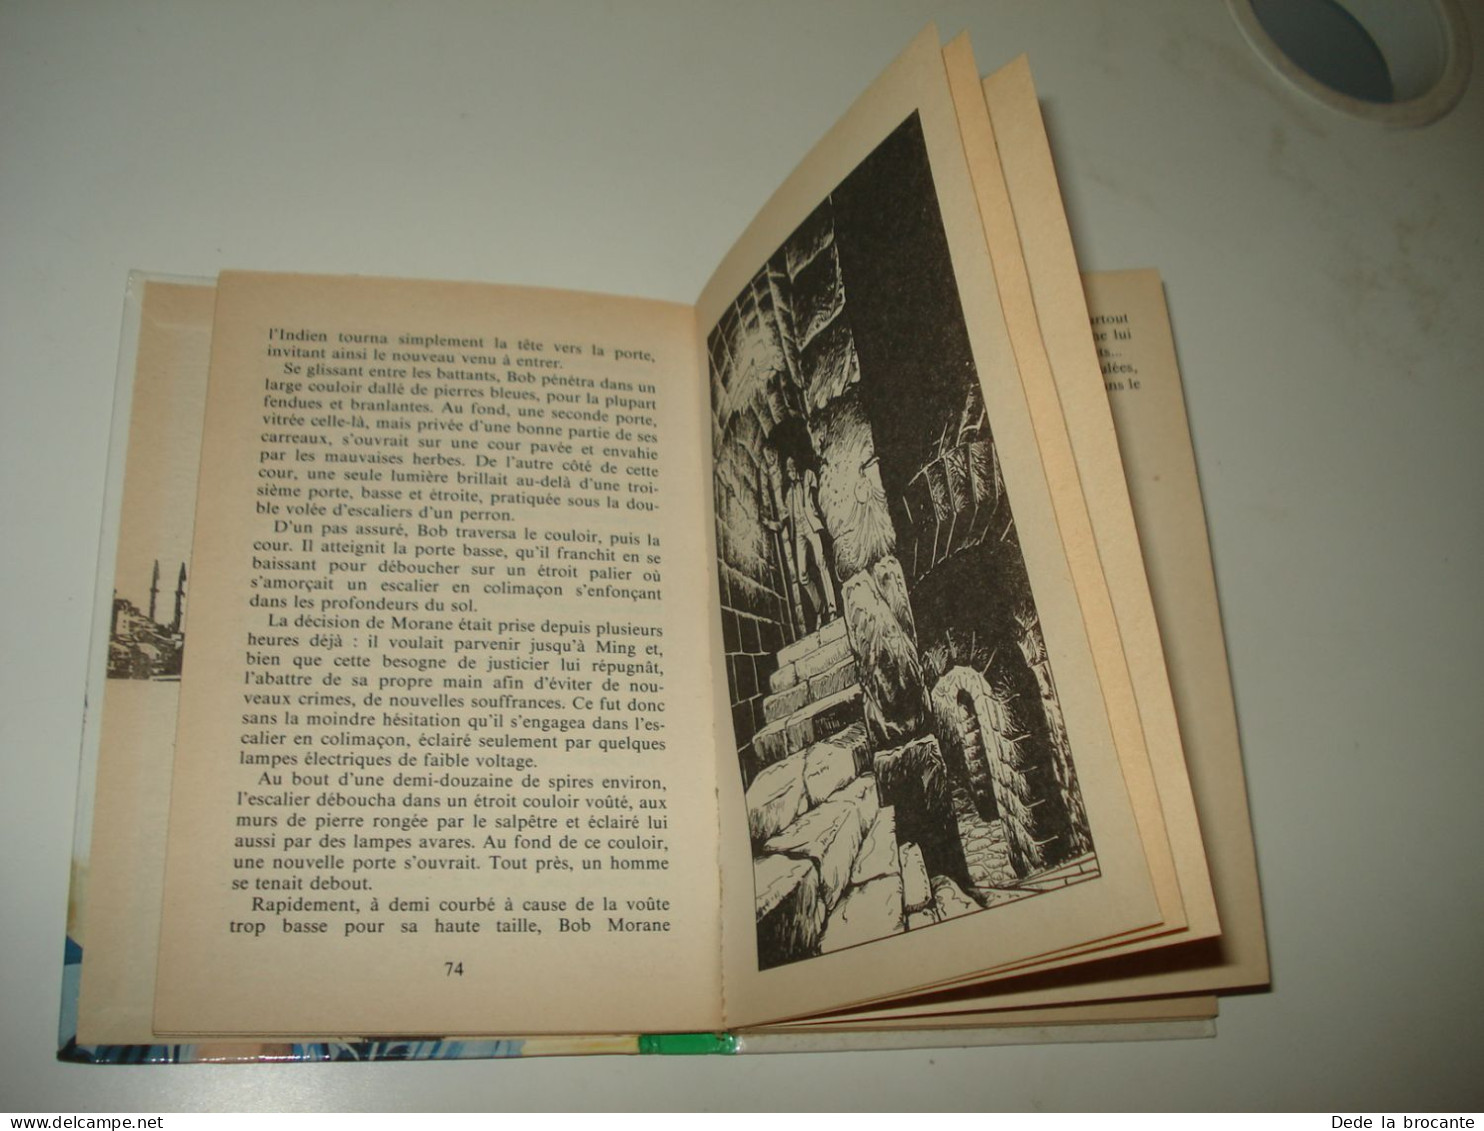 C55  / Bob Morane  " la revanche de l'ombre jaune " Hachette poche - EO 1984